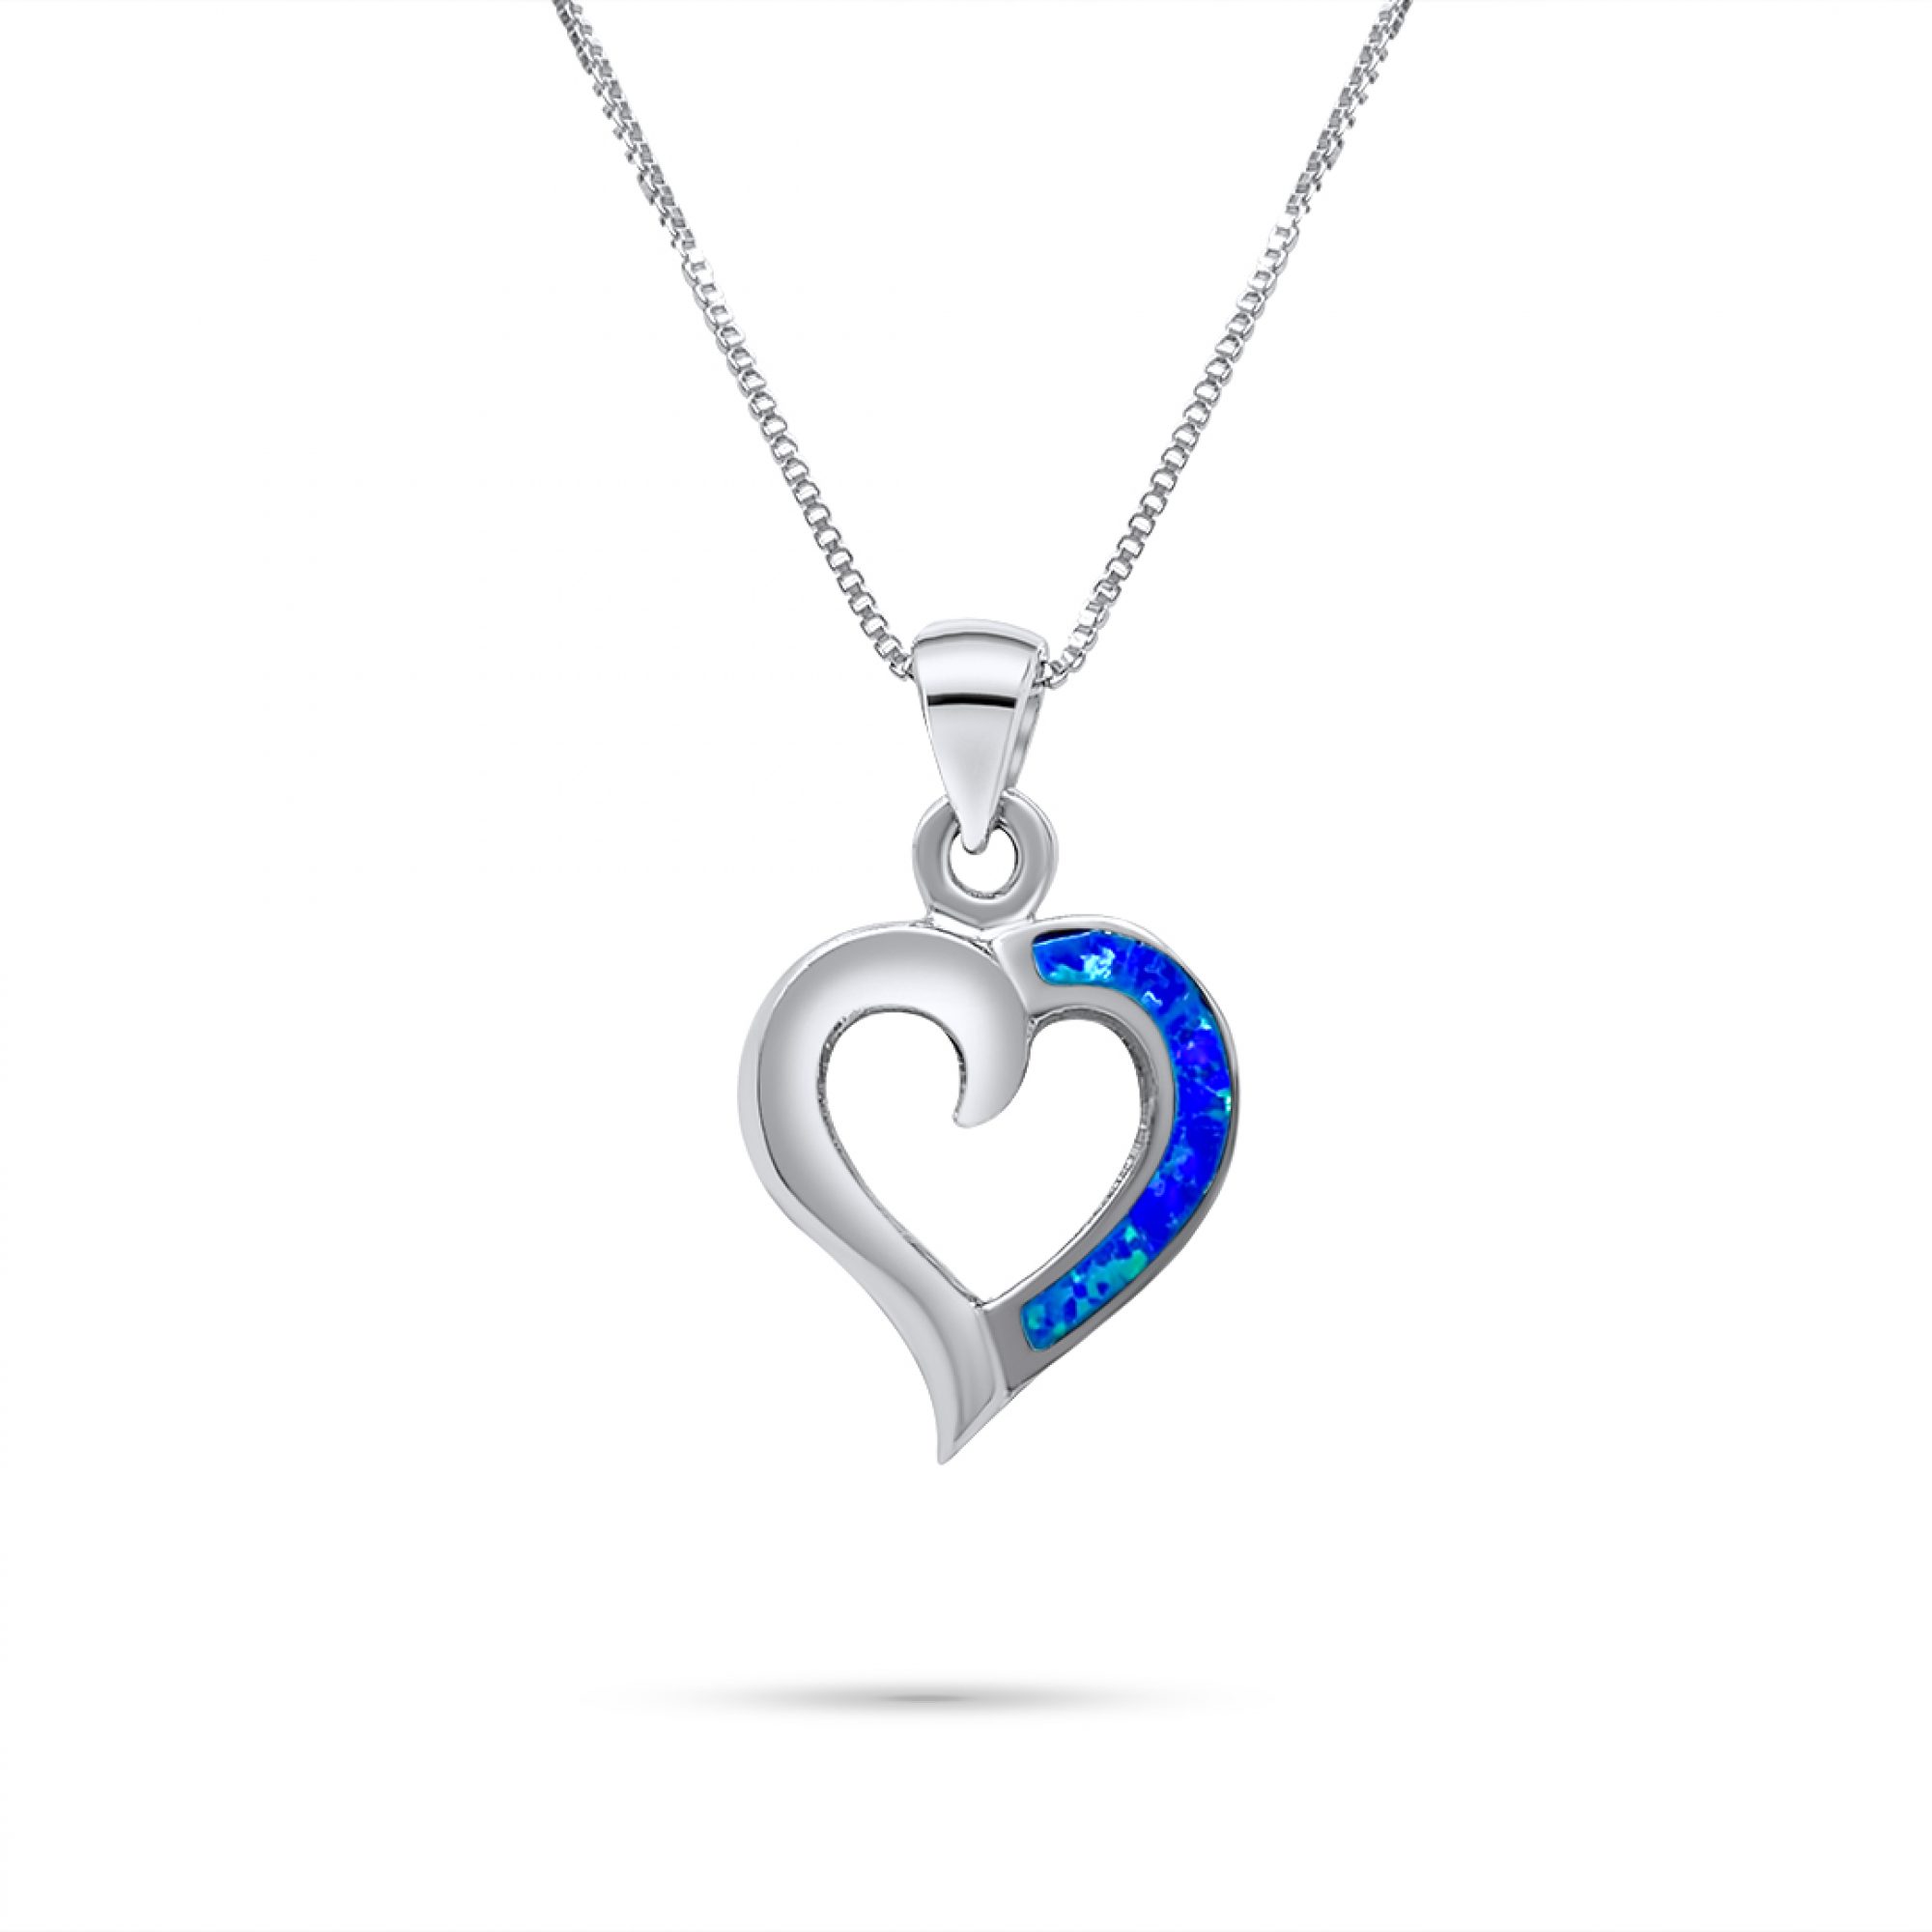 Opal heart pendant